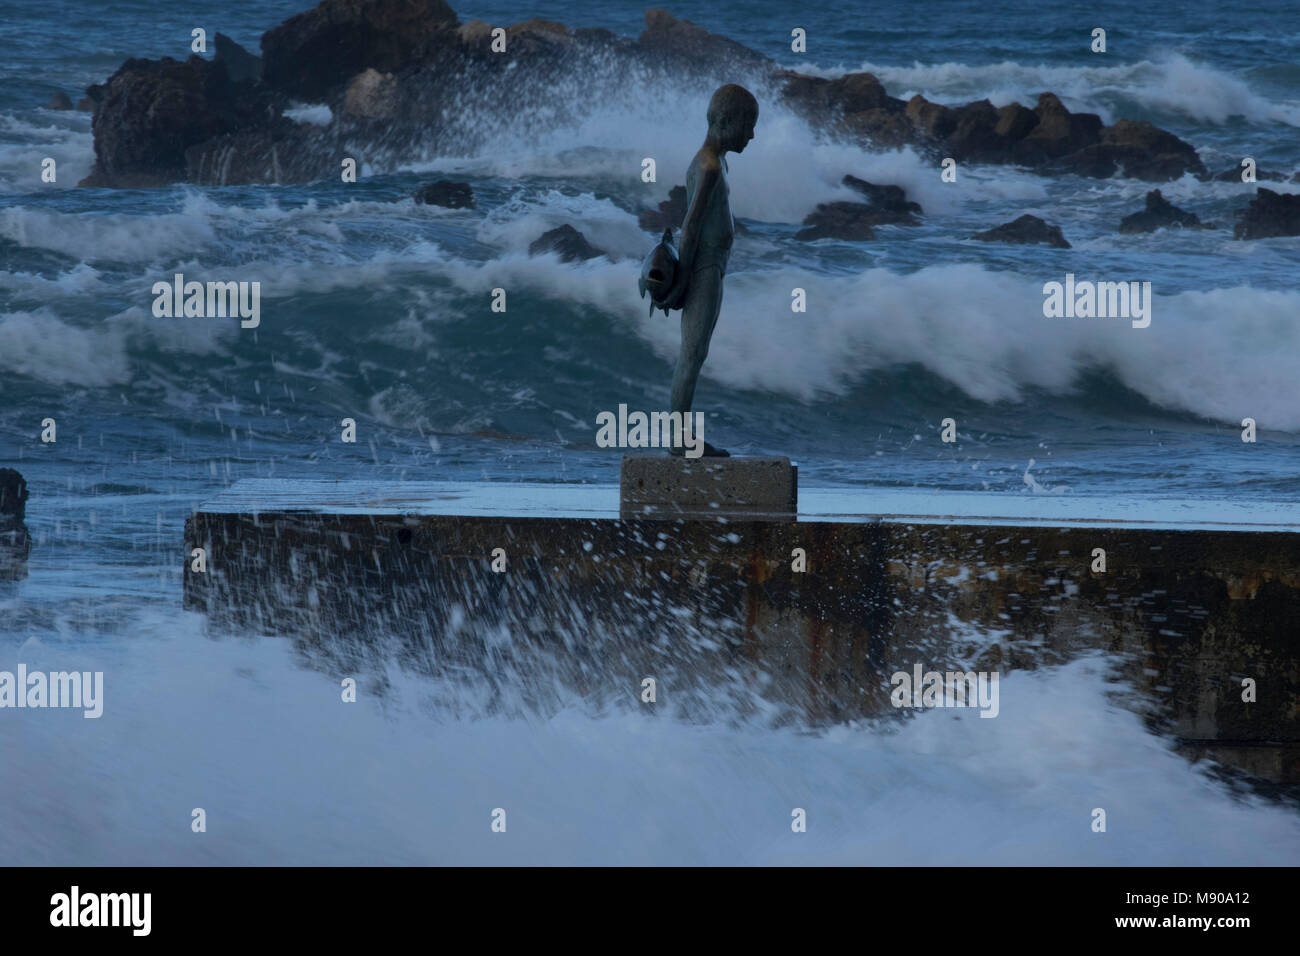 Wild mer Méditerranée dans le port de Paphos avec statue de garçon avec poisson, Paphos, Chypre, Méditerranéenne Banque D'Images